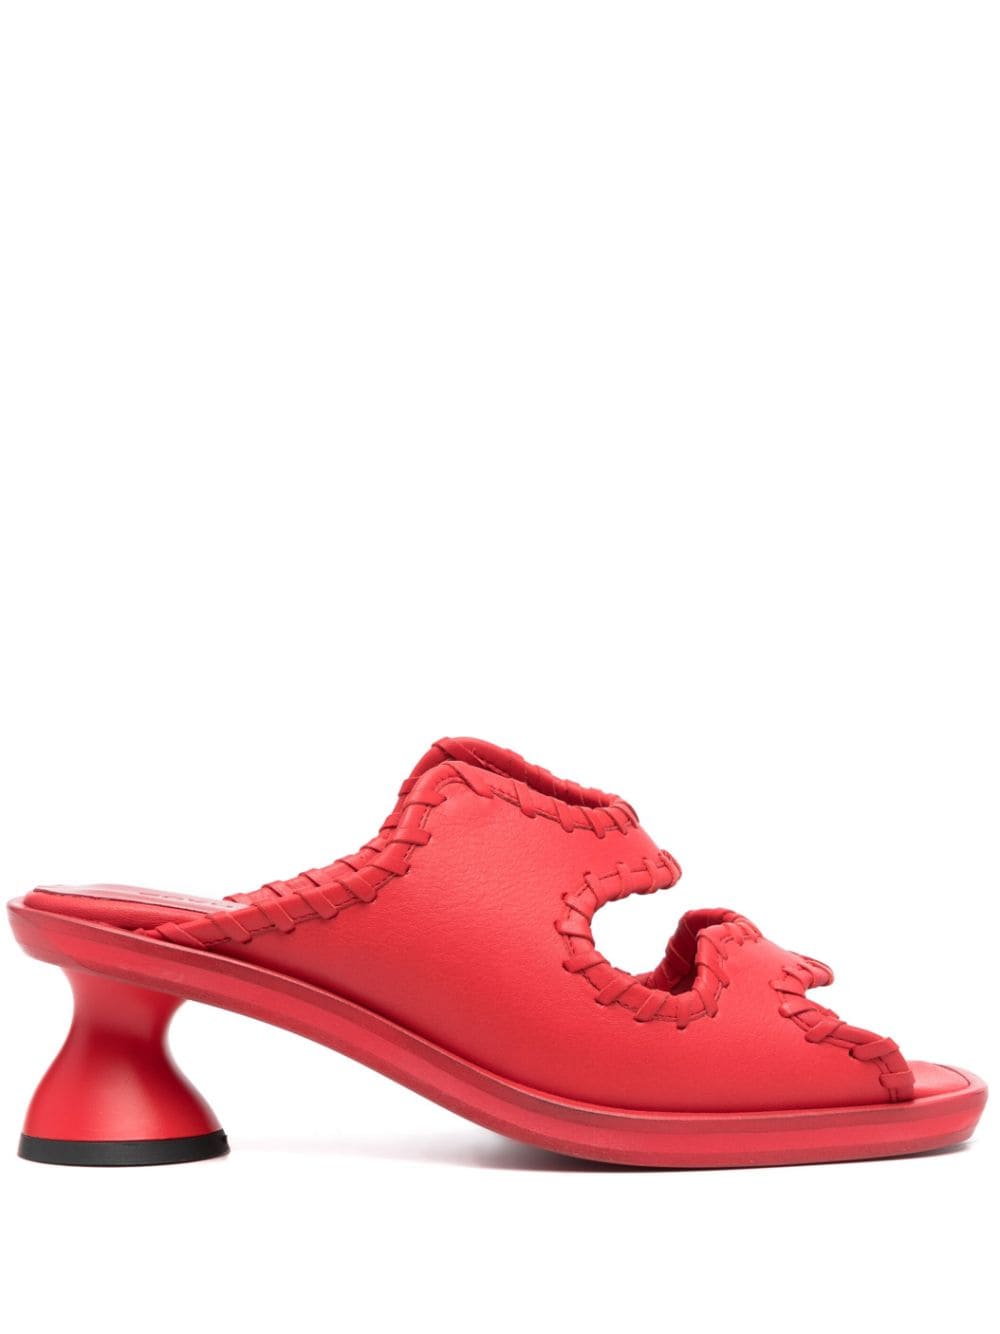 Eckhaus Latta Toadstool 65mm leather sandals - Red von Eckhaus Latta